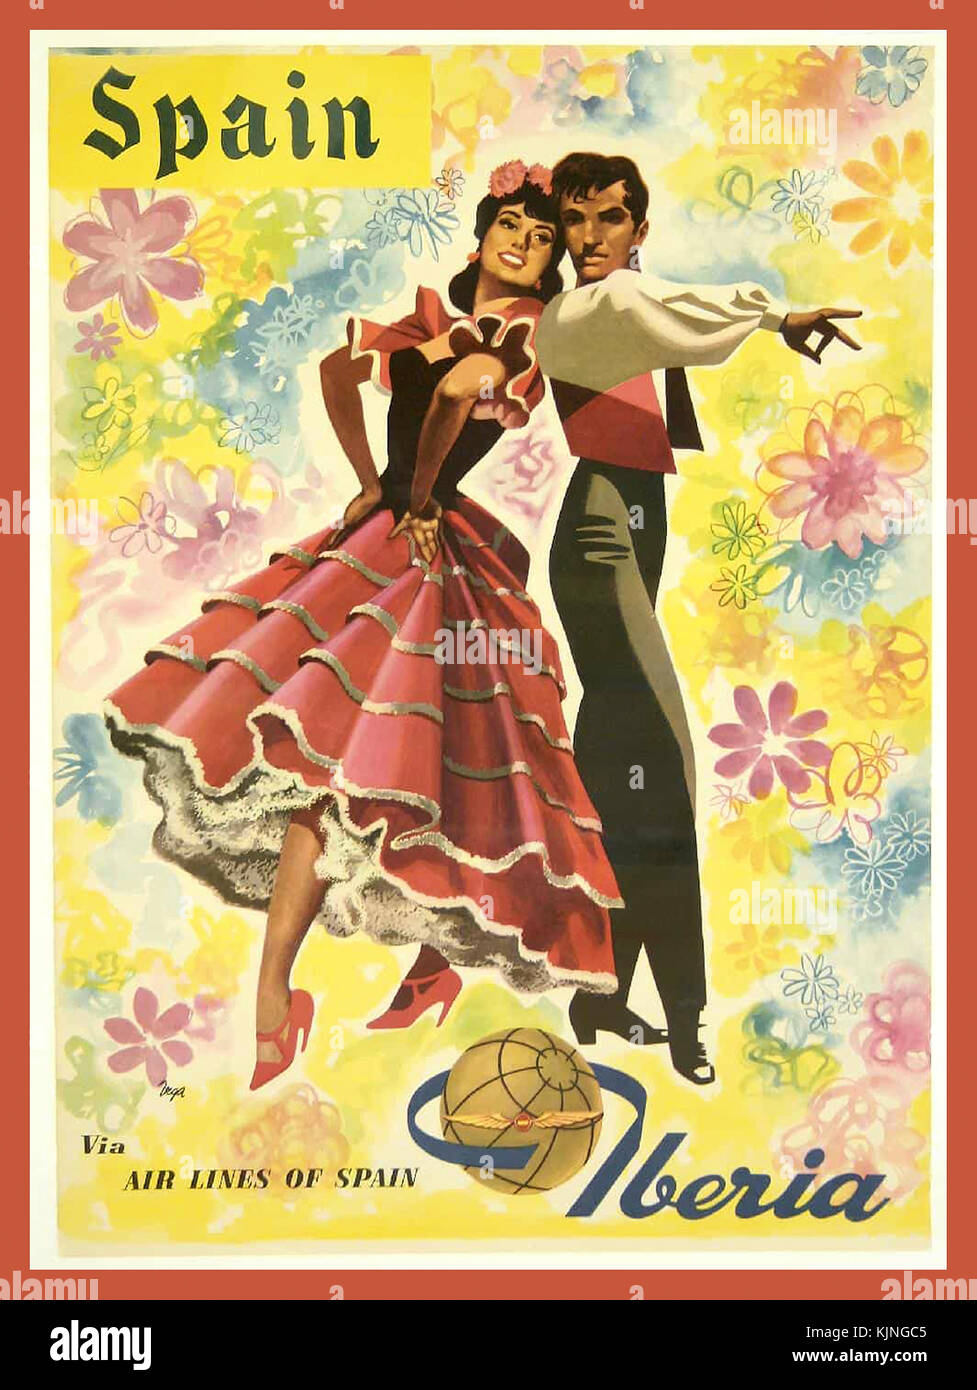 Jahrgang 1950's Travel Holiday Poster für Spanien über Iberia Airlines mit einem spanischen Paar in traditioneller Flamenco Kostüm Kleid Stockfoto